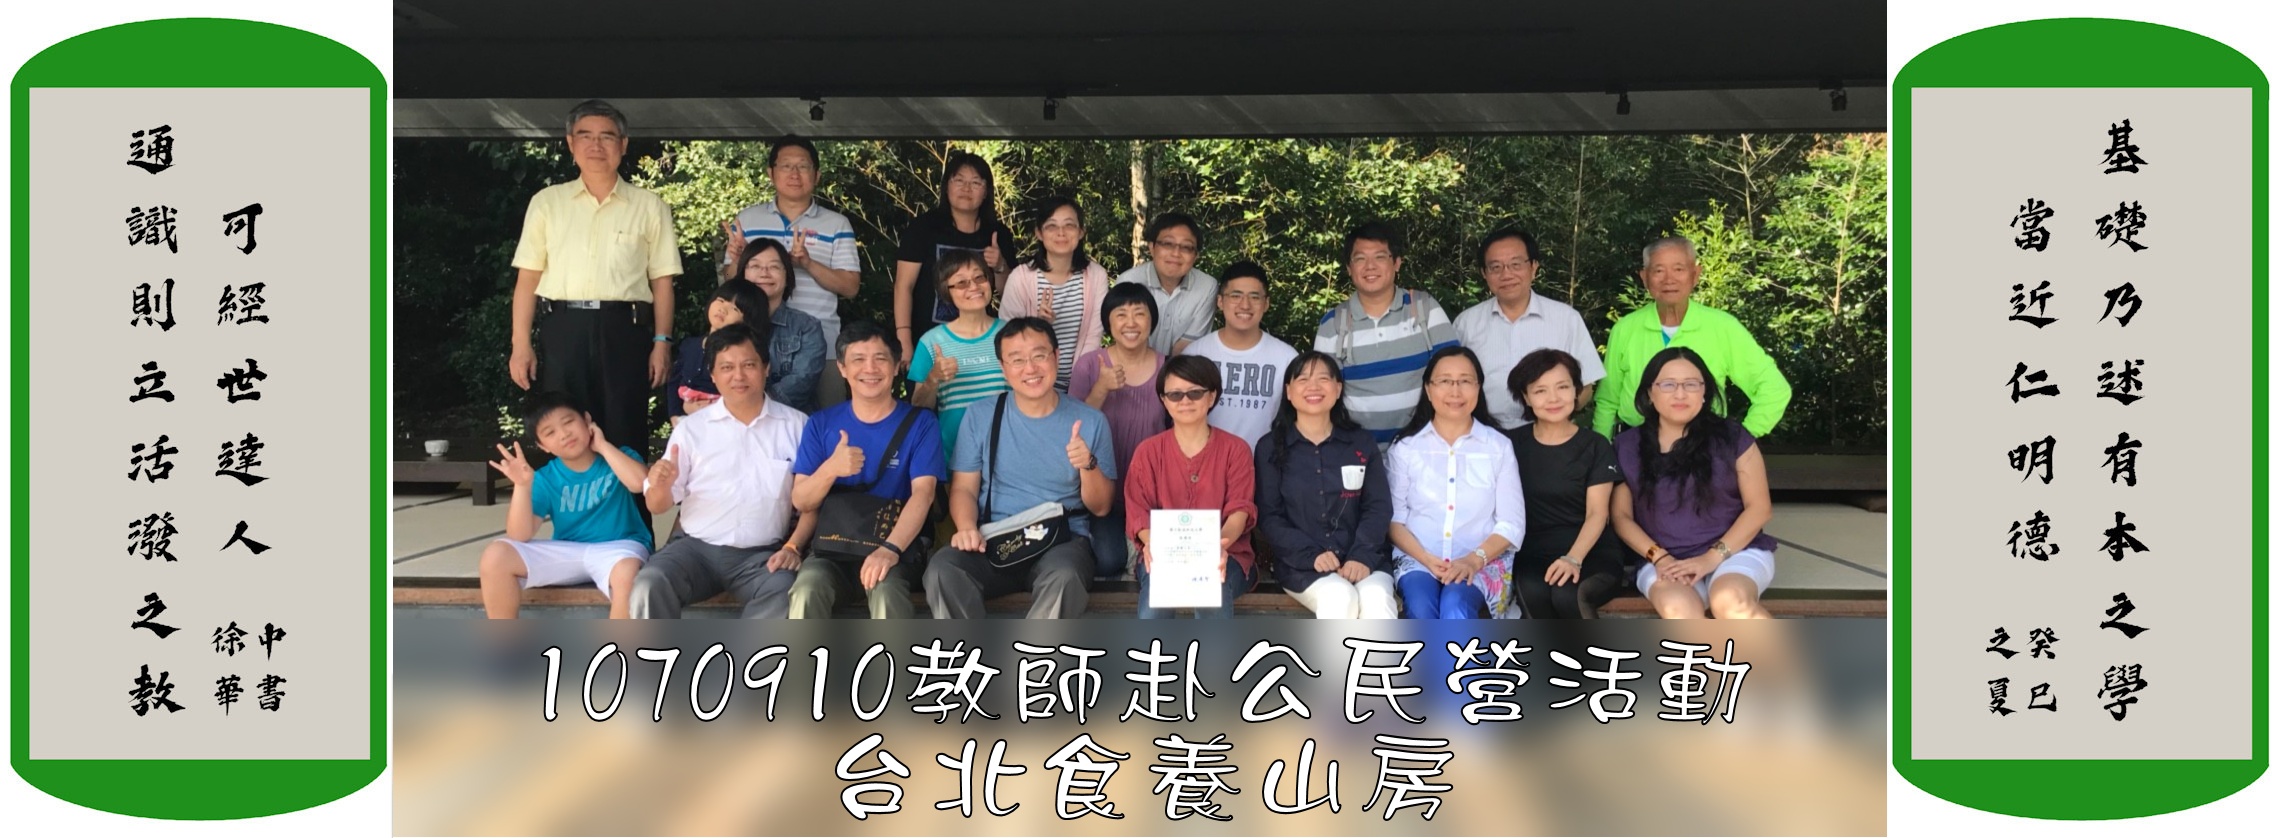 1070910教師赴公民營活動台北食養山房